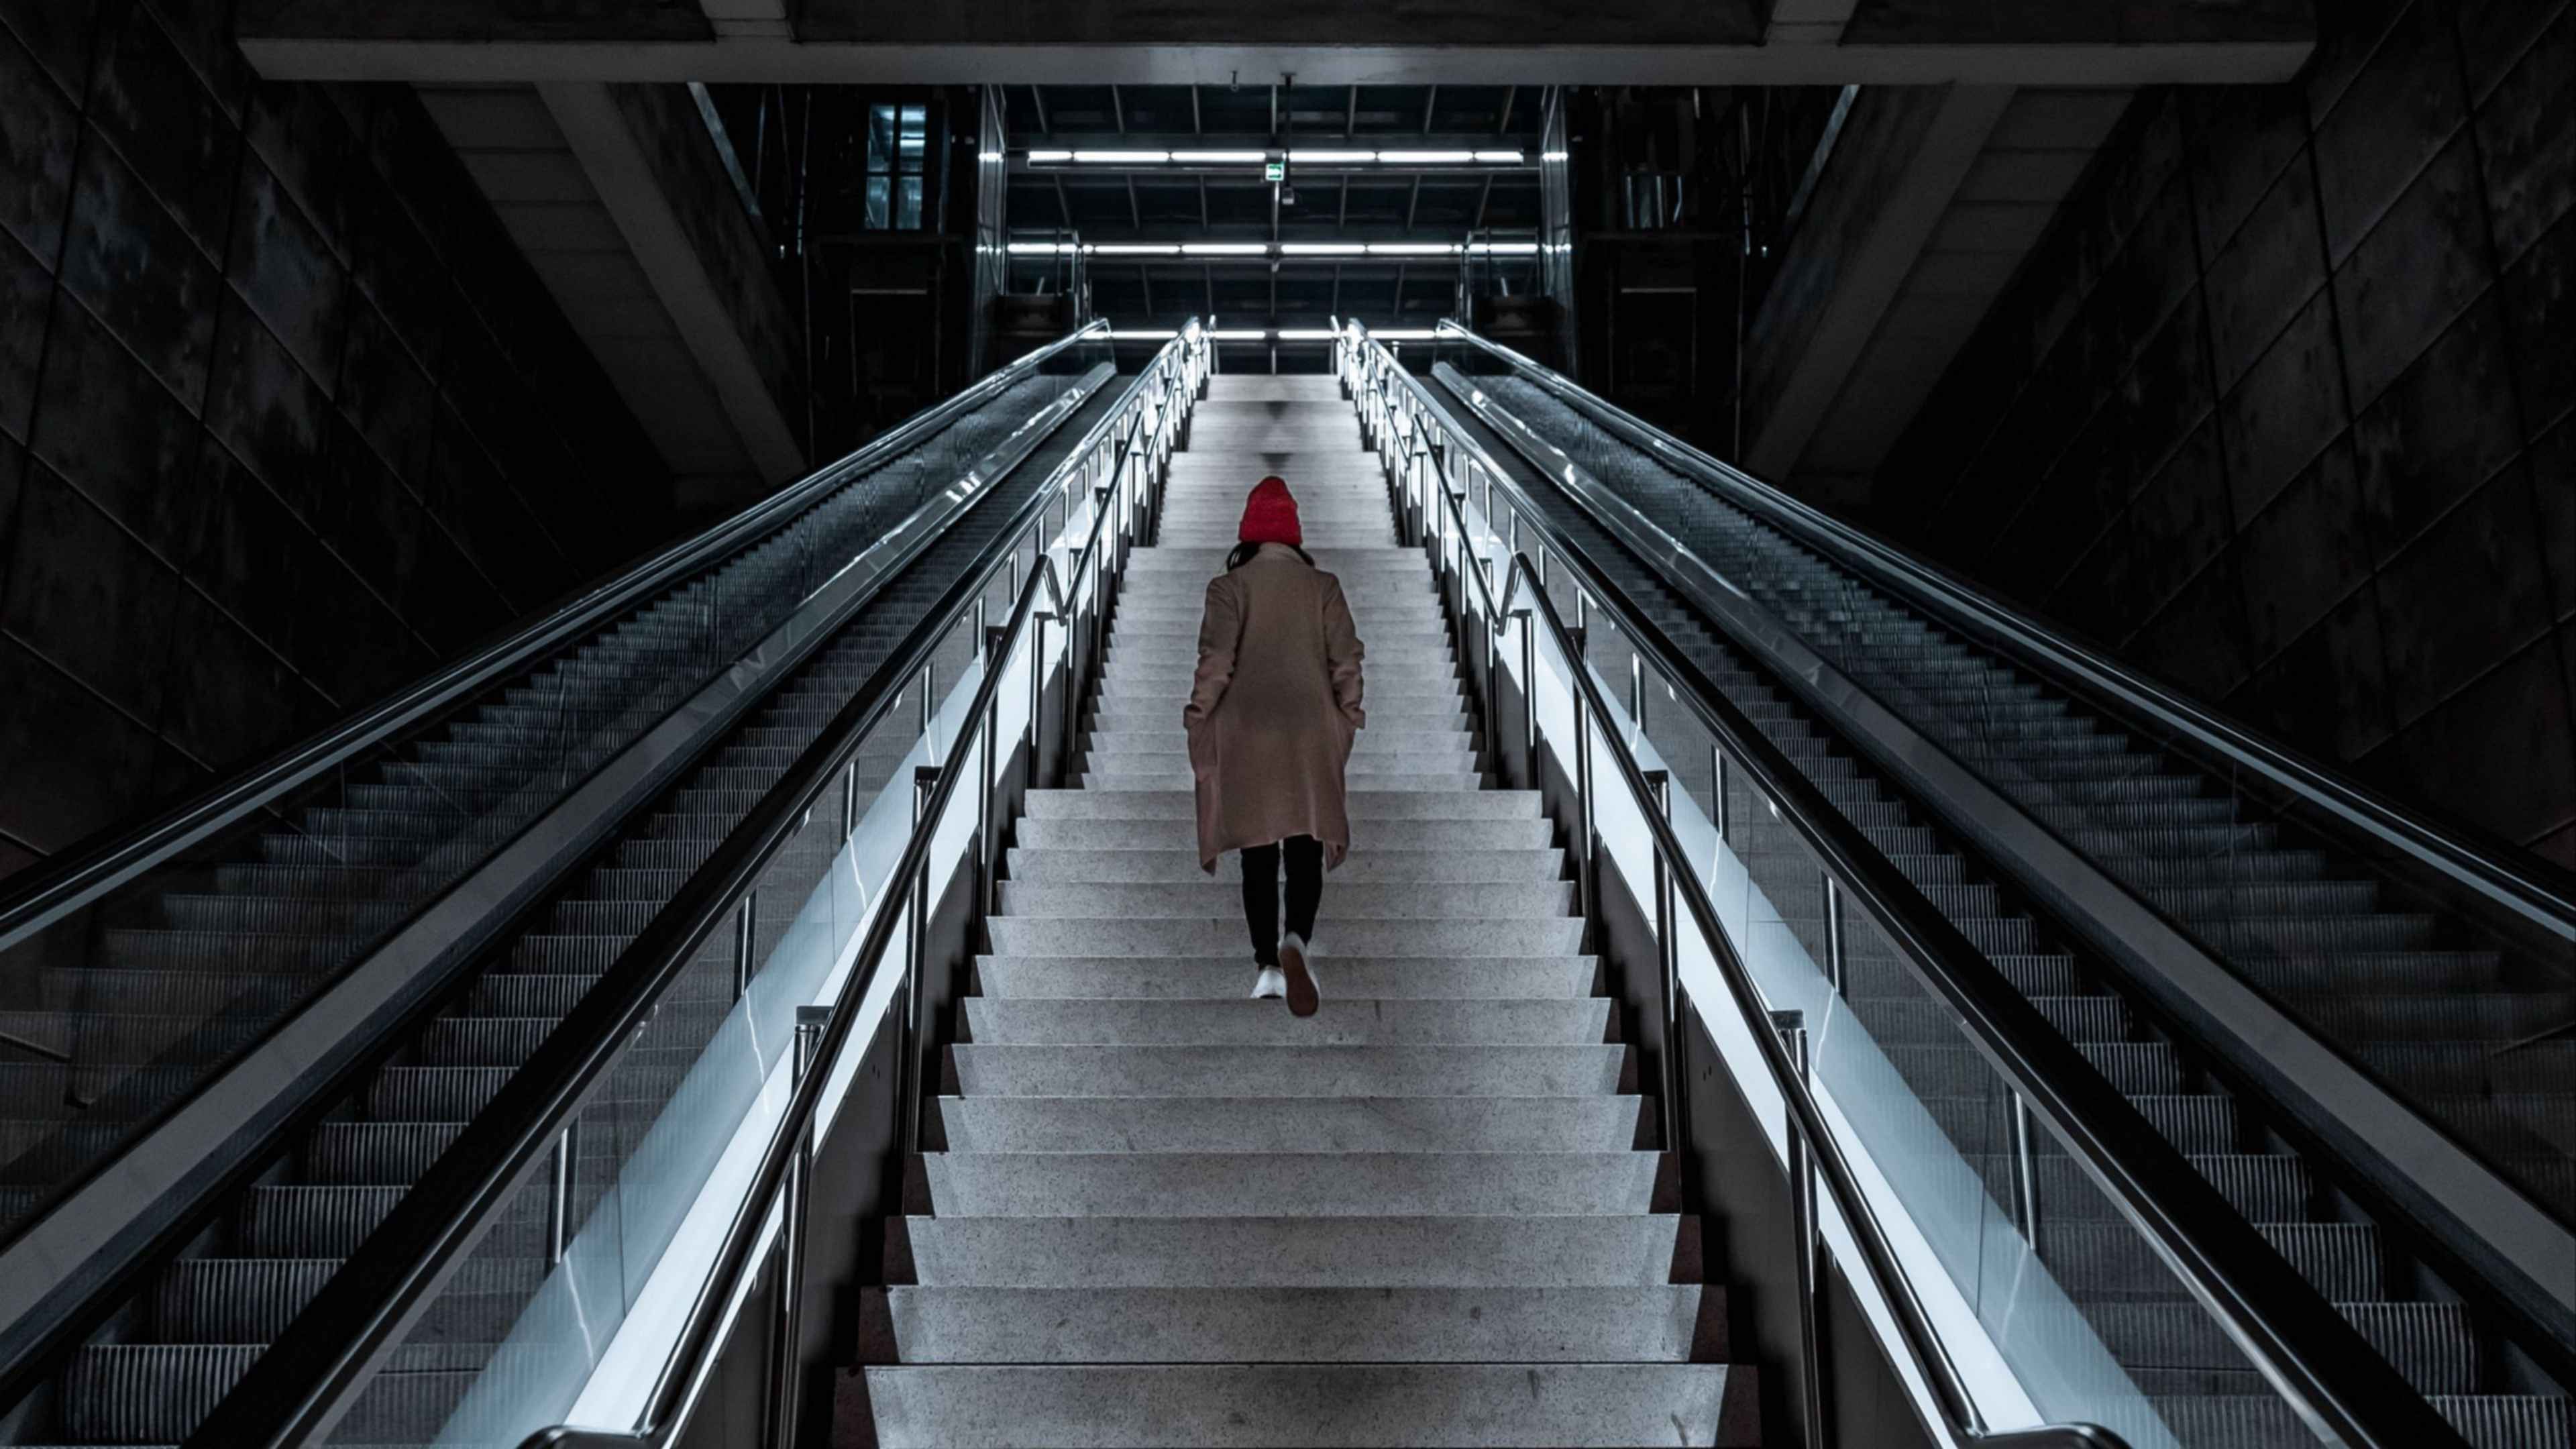 Остановился лестница. Люди на эскалаторе. Лестница в метро. Человек на лестнице. Карьерный эскалатор.